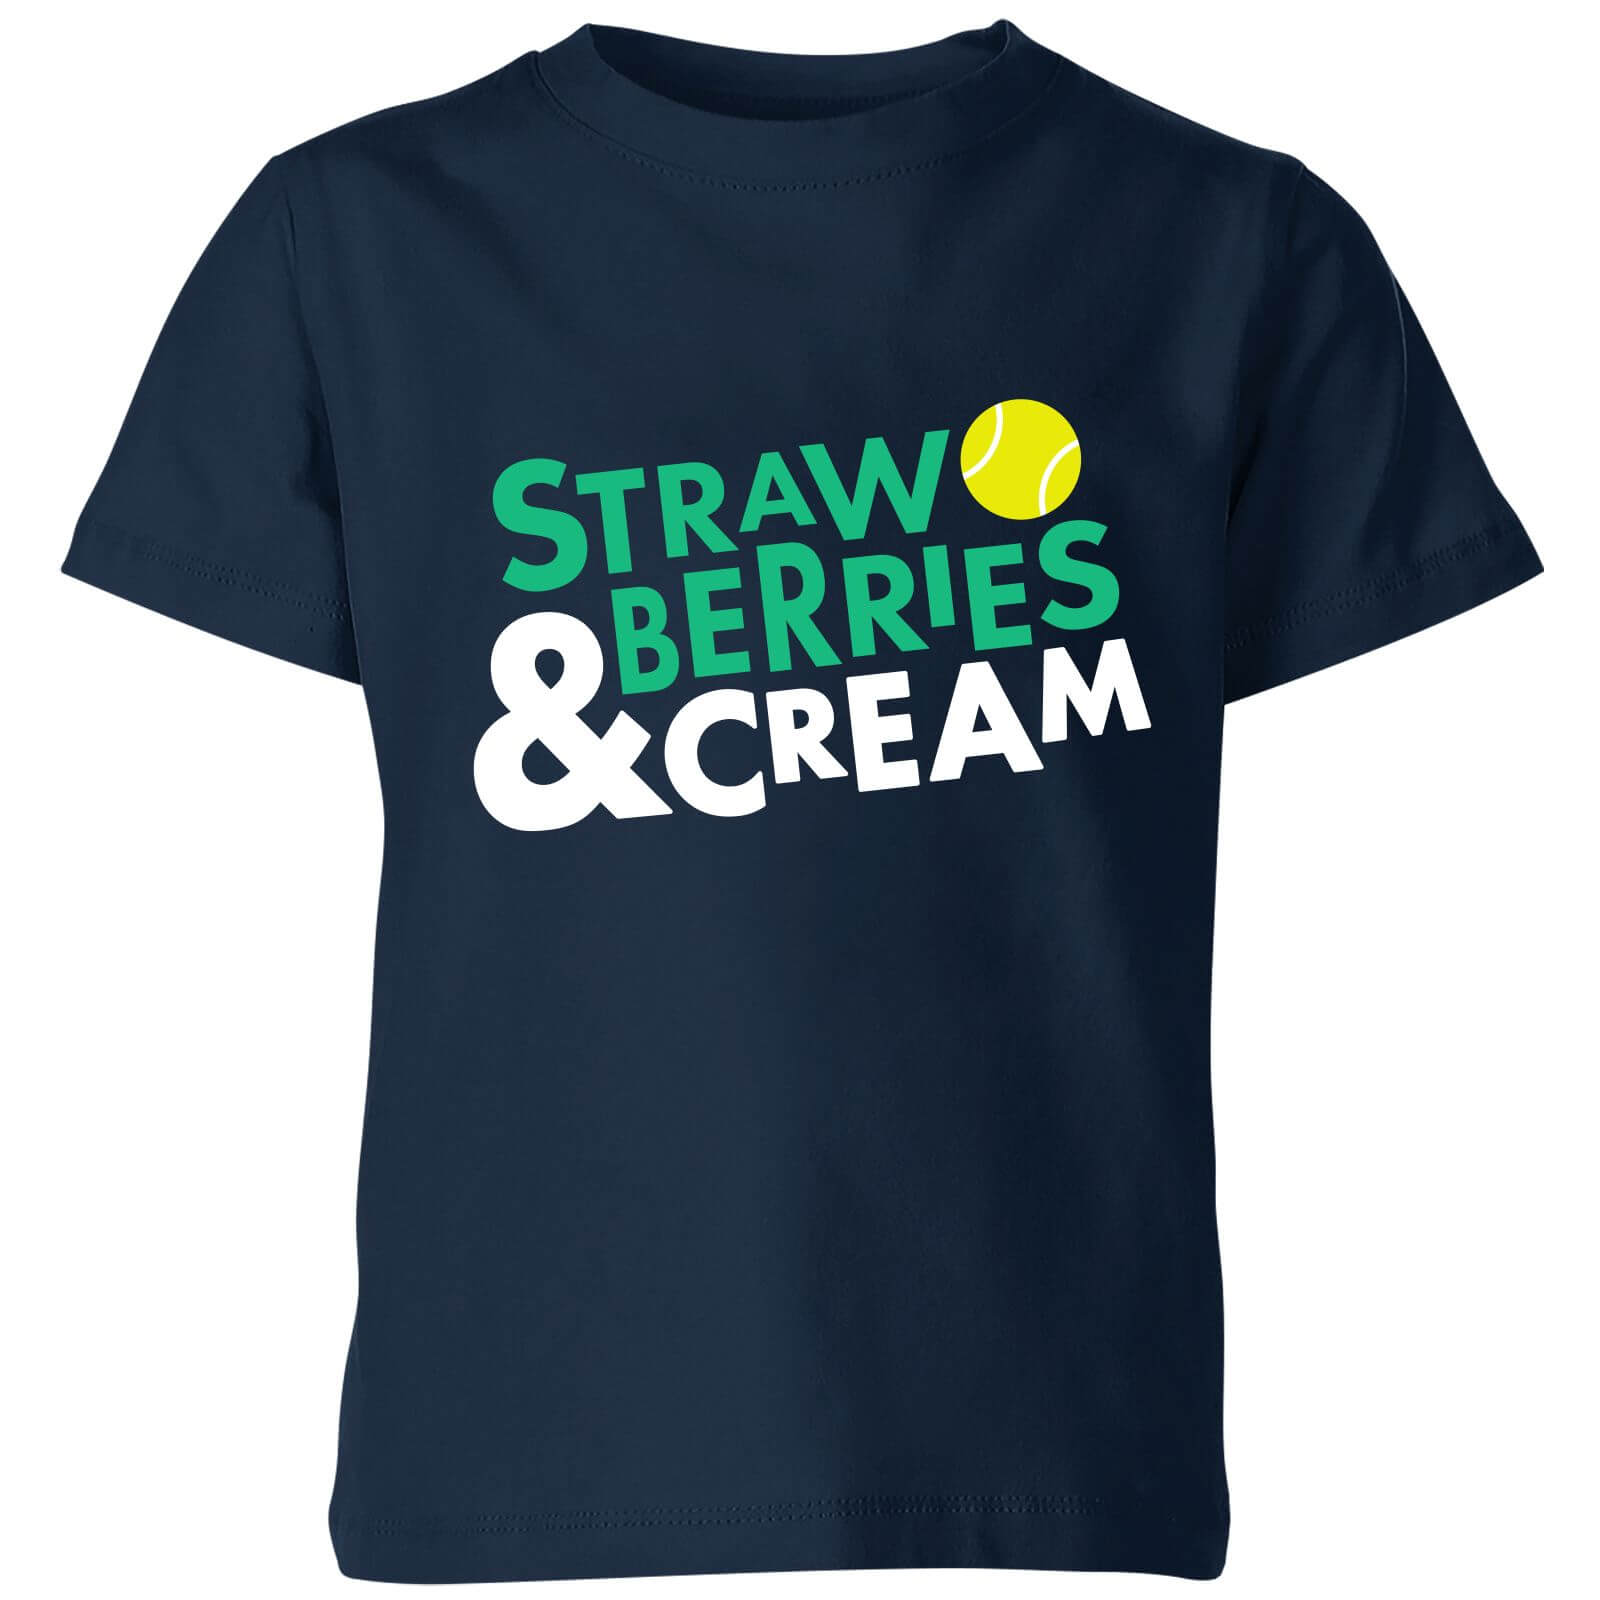 Strawberries and Cream Kids' T-Shirt - Navy - 3-4 Years - Navy